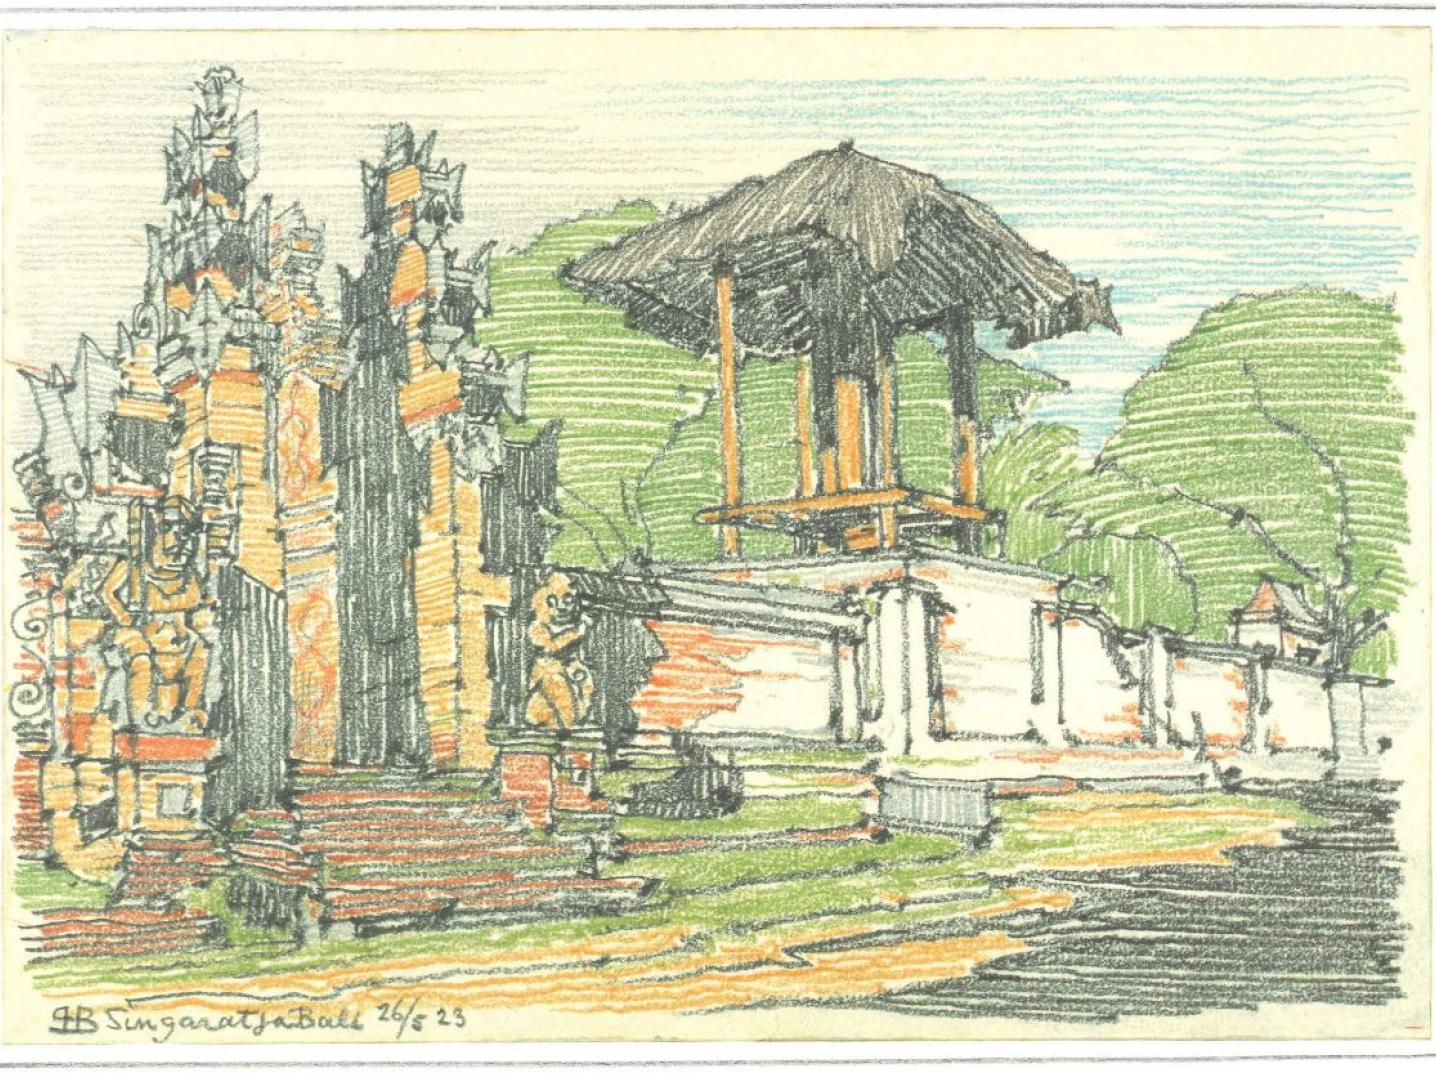 Drawing of Singaratja, Bali by Berlage (1923). Archives of Berlage at Het Nieuwe Instituut